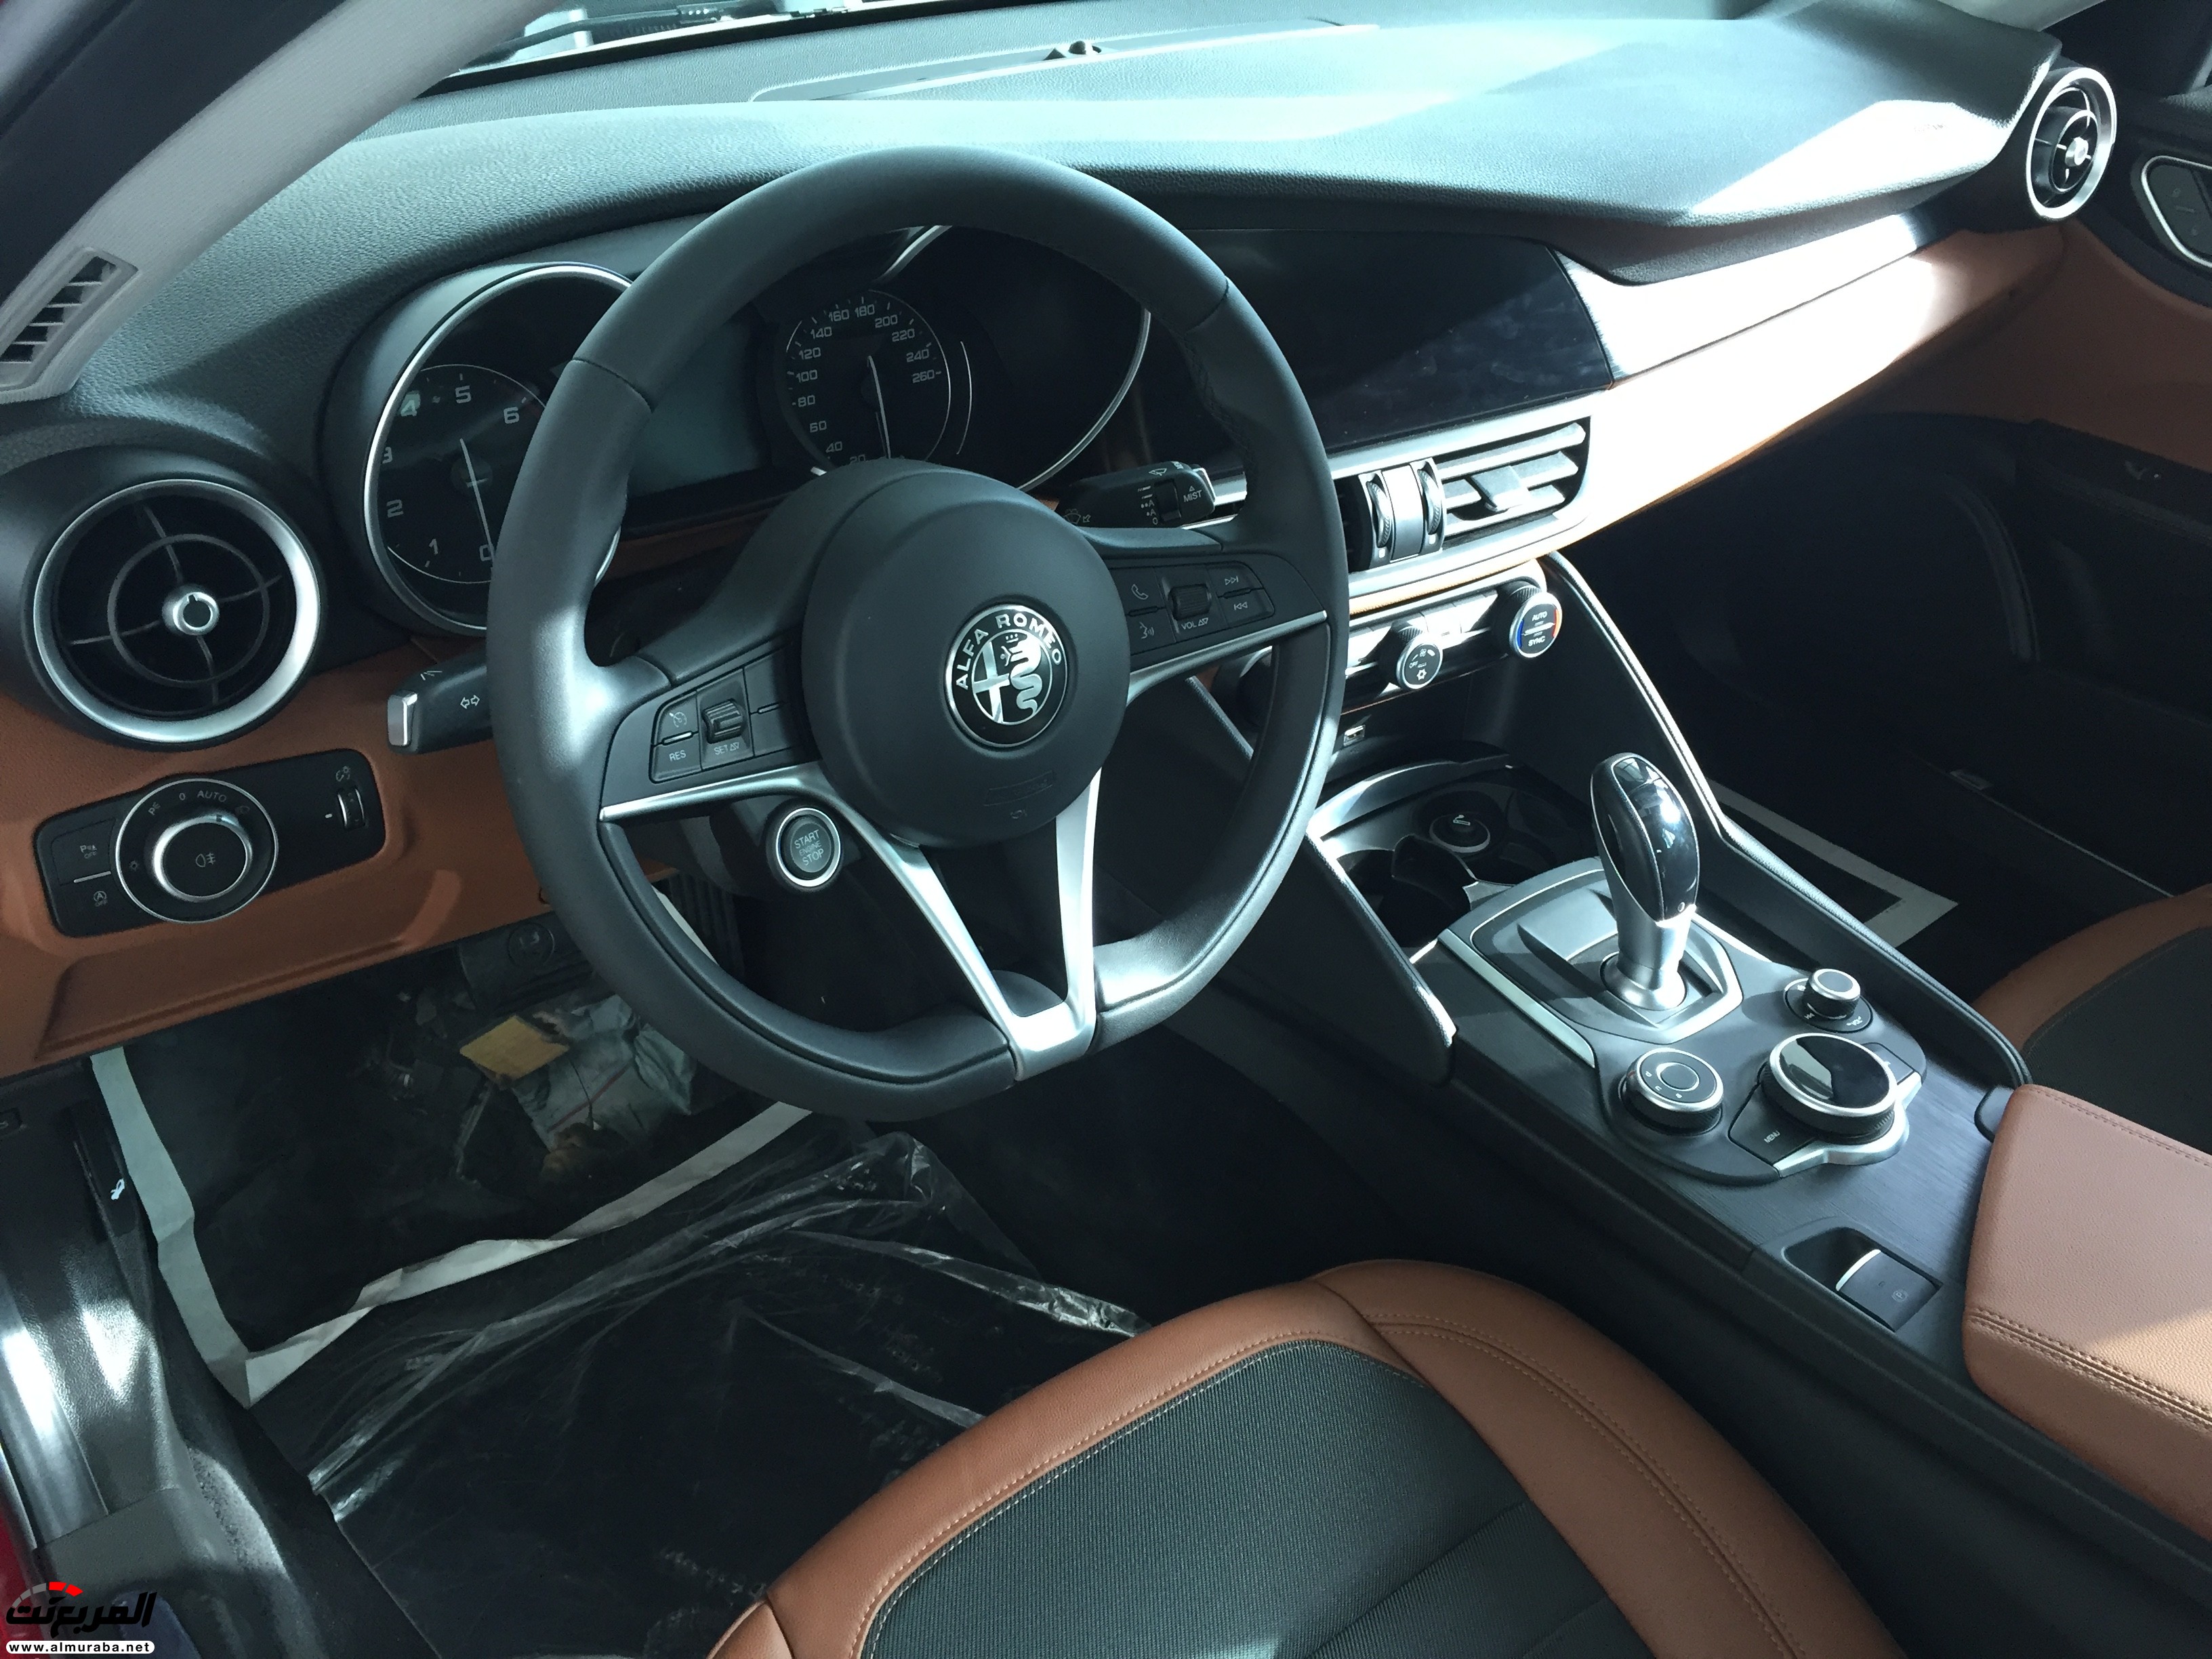 الفا روميو جوليا 2017 تصل الى السعودية وكالة المتحدة "صور ومواصفات واسعار" Alfa Romeo Giulia 13